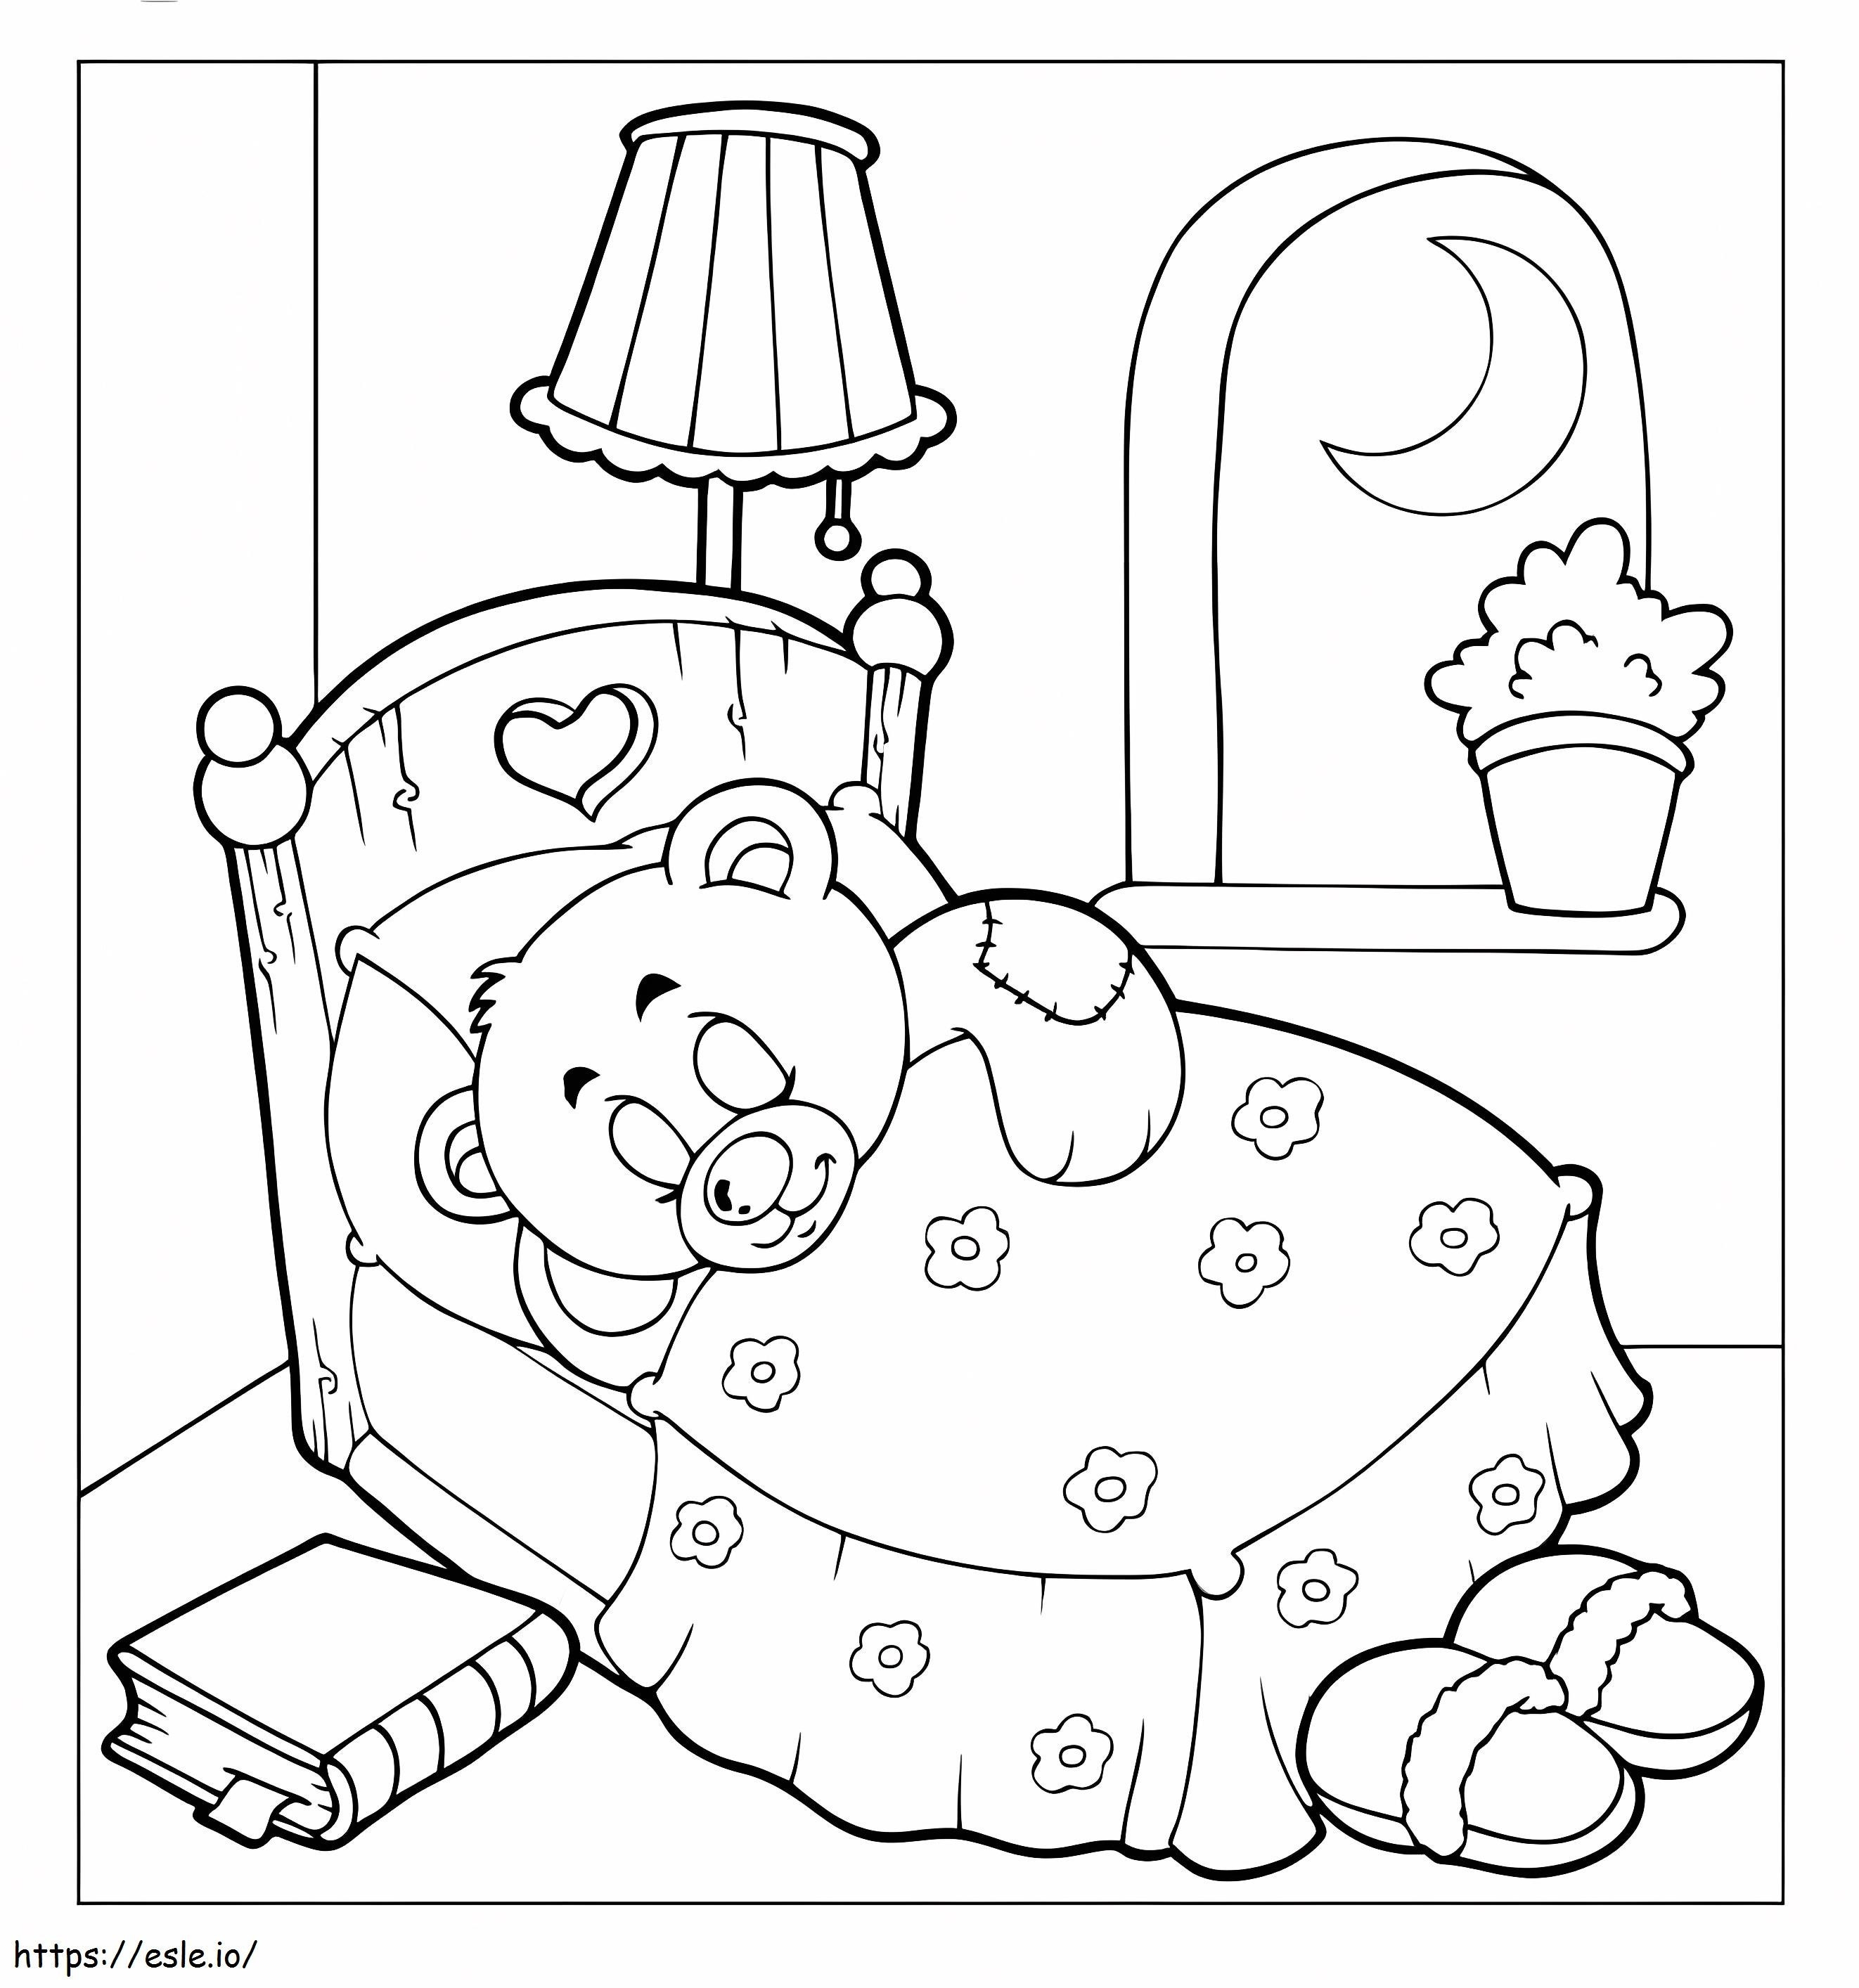 Ursinho de pelúcia dormindo para colorir